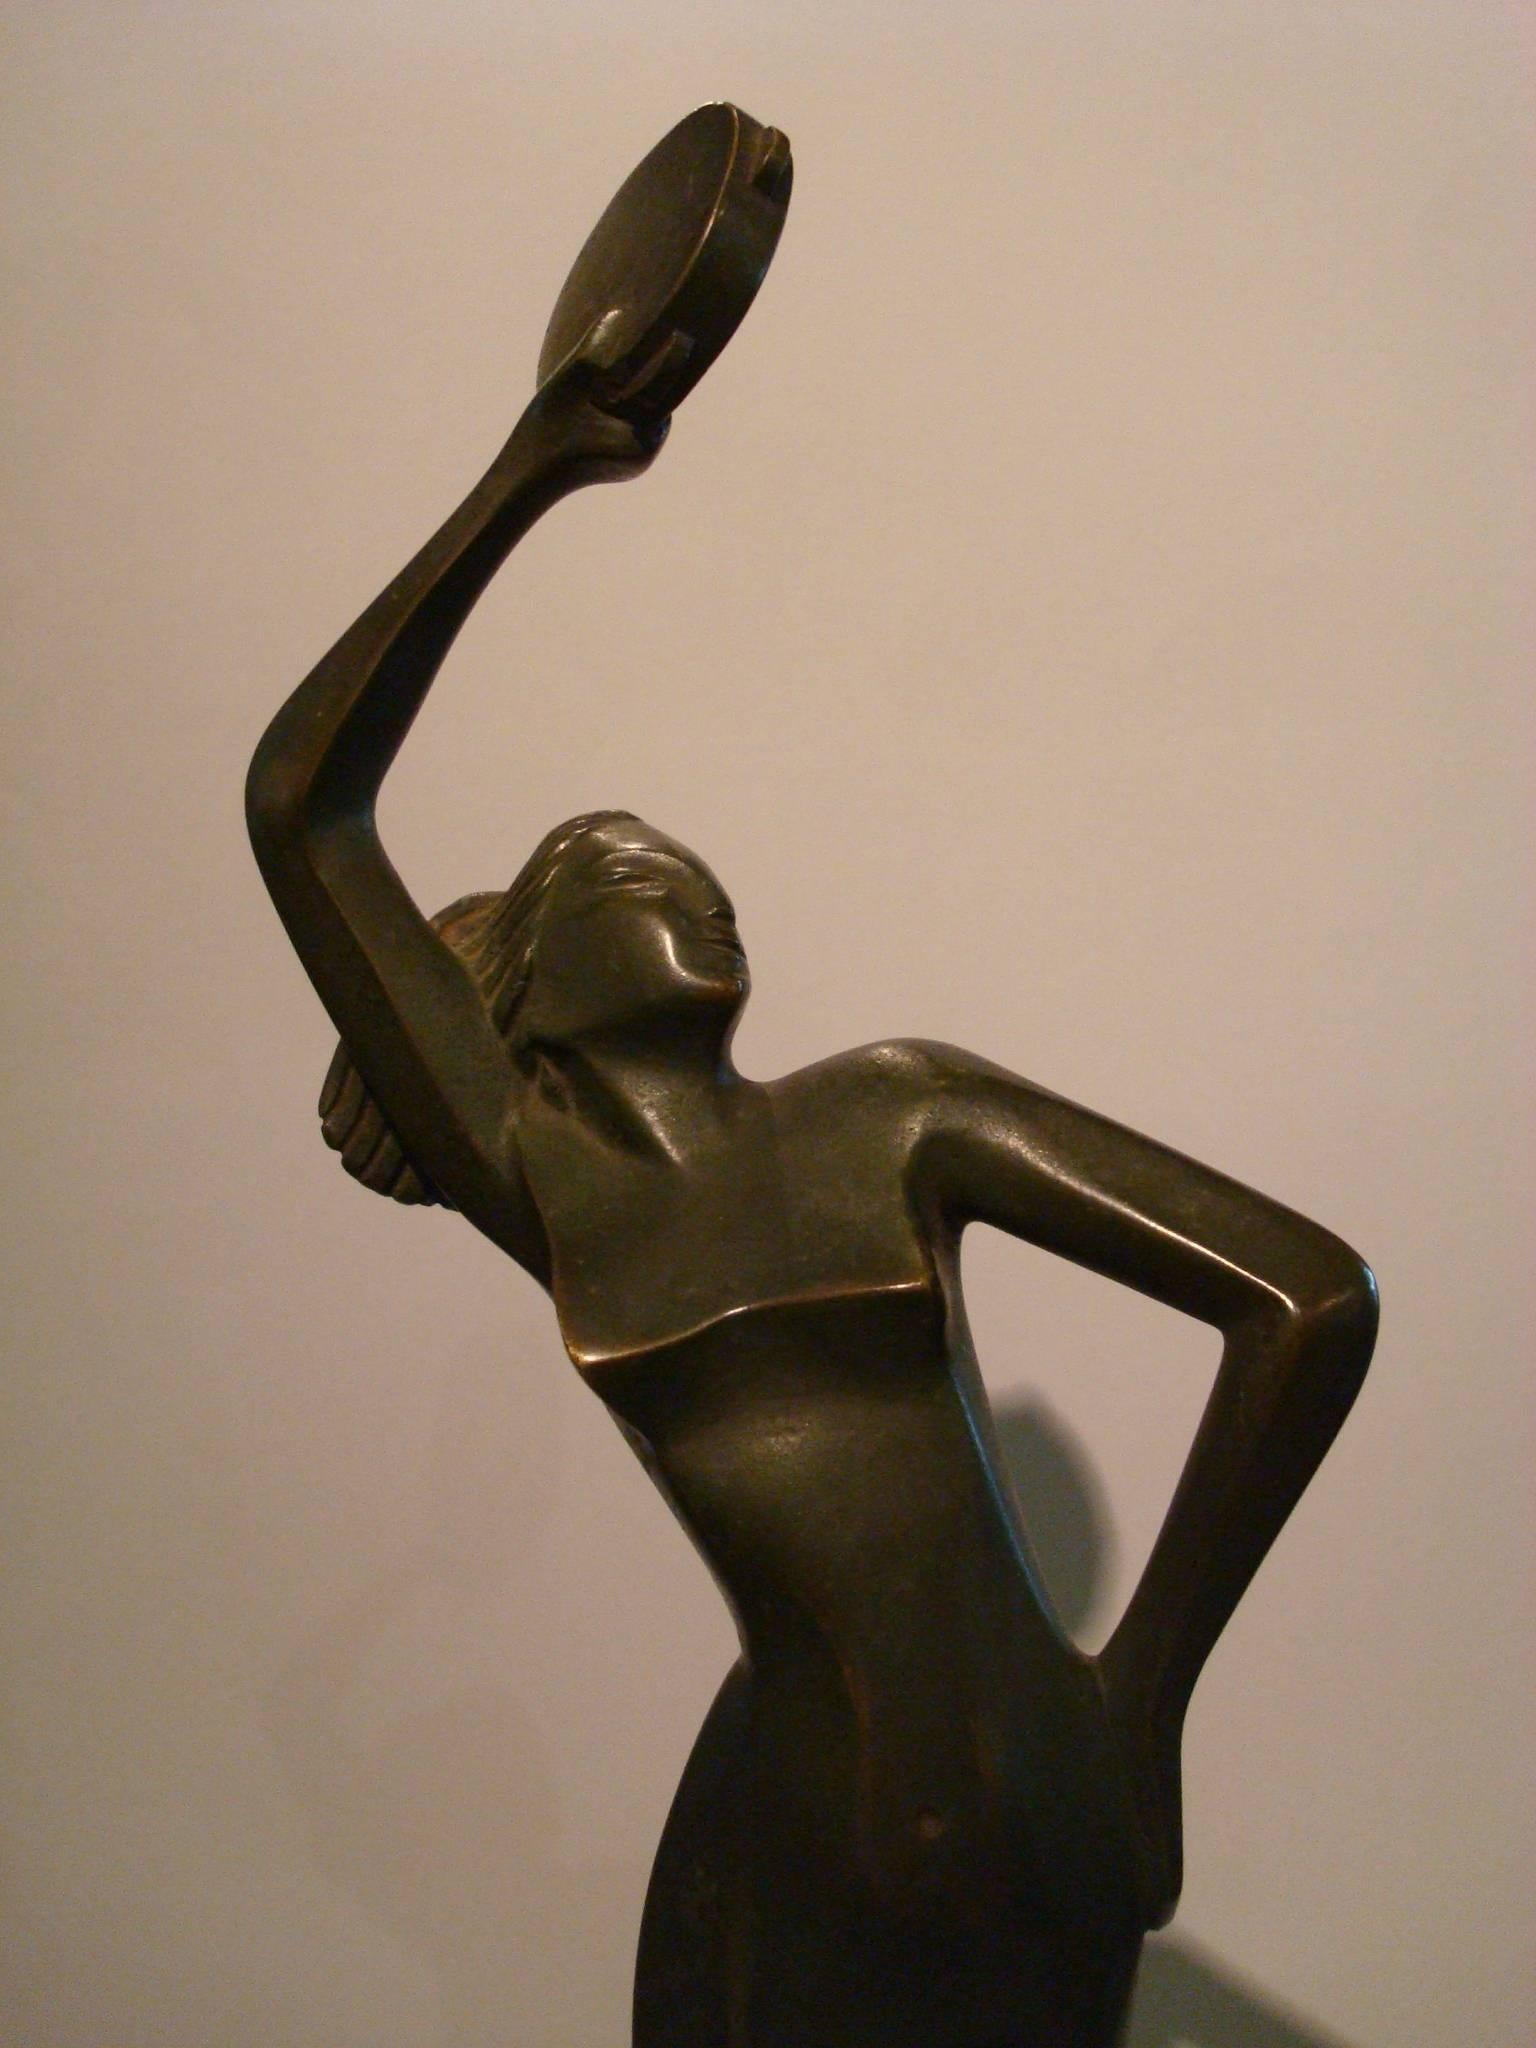 Figurine italienne Art Déco représentant une femme dansant avec une musique  l'instrument. 
Sculpture d'une fille nue dansante. Bronze patiné vert foncé.
Monté sur une base en marbre.